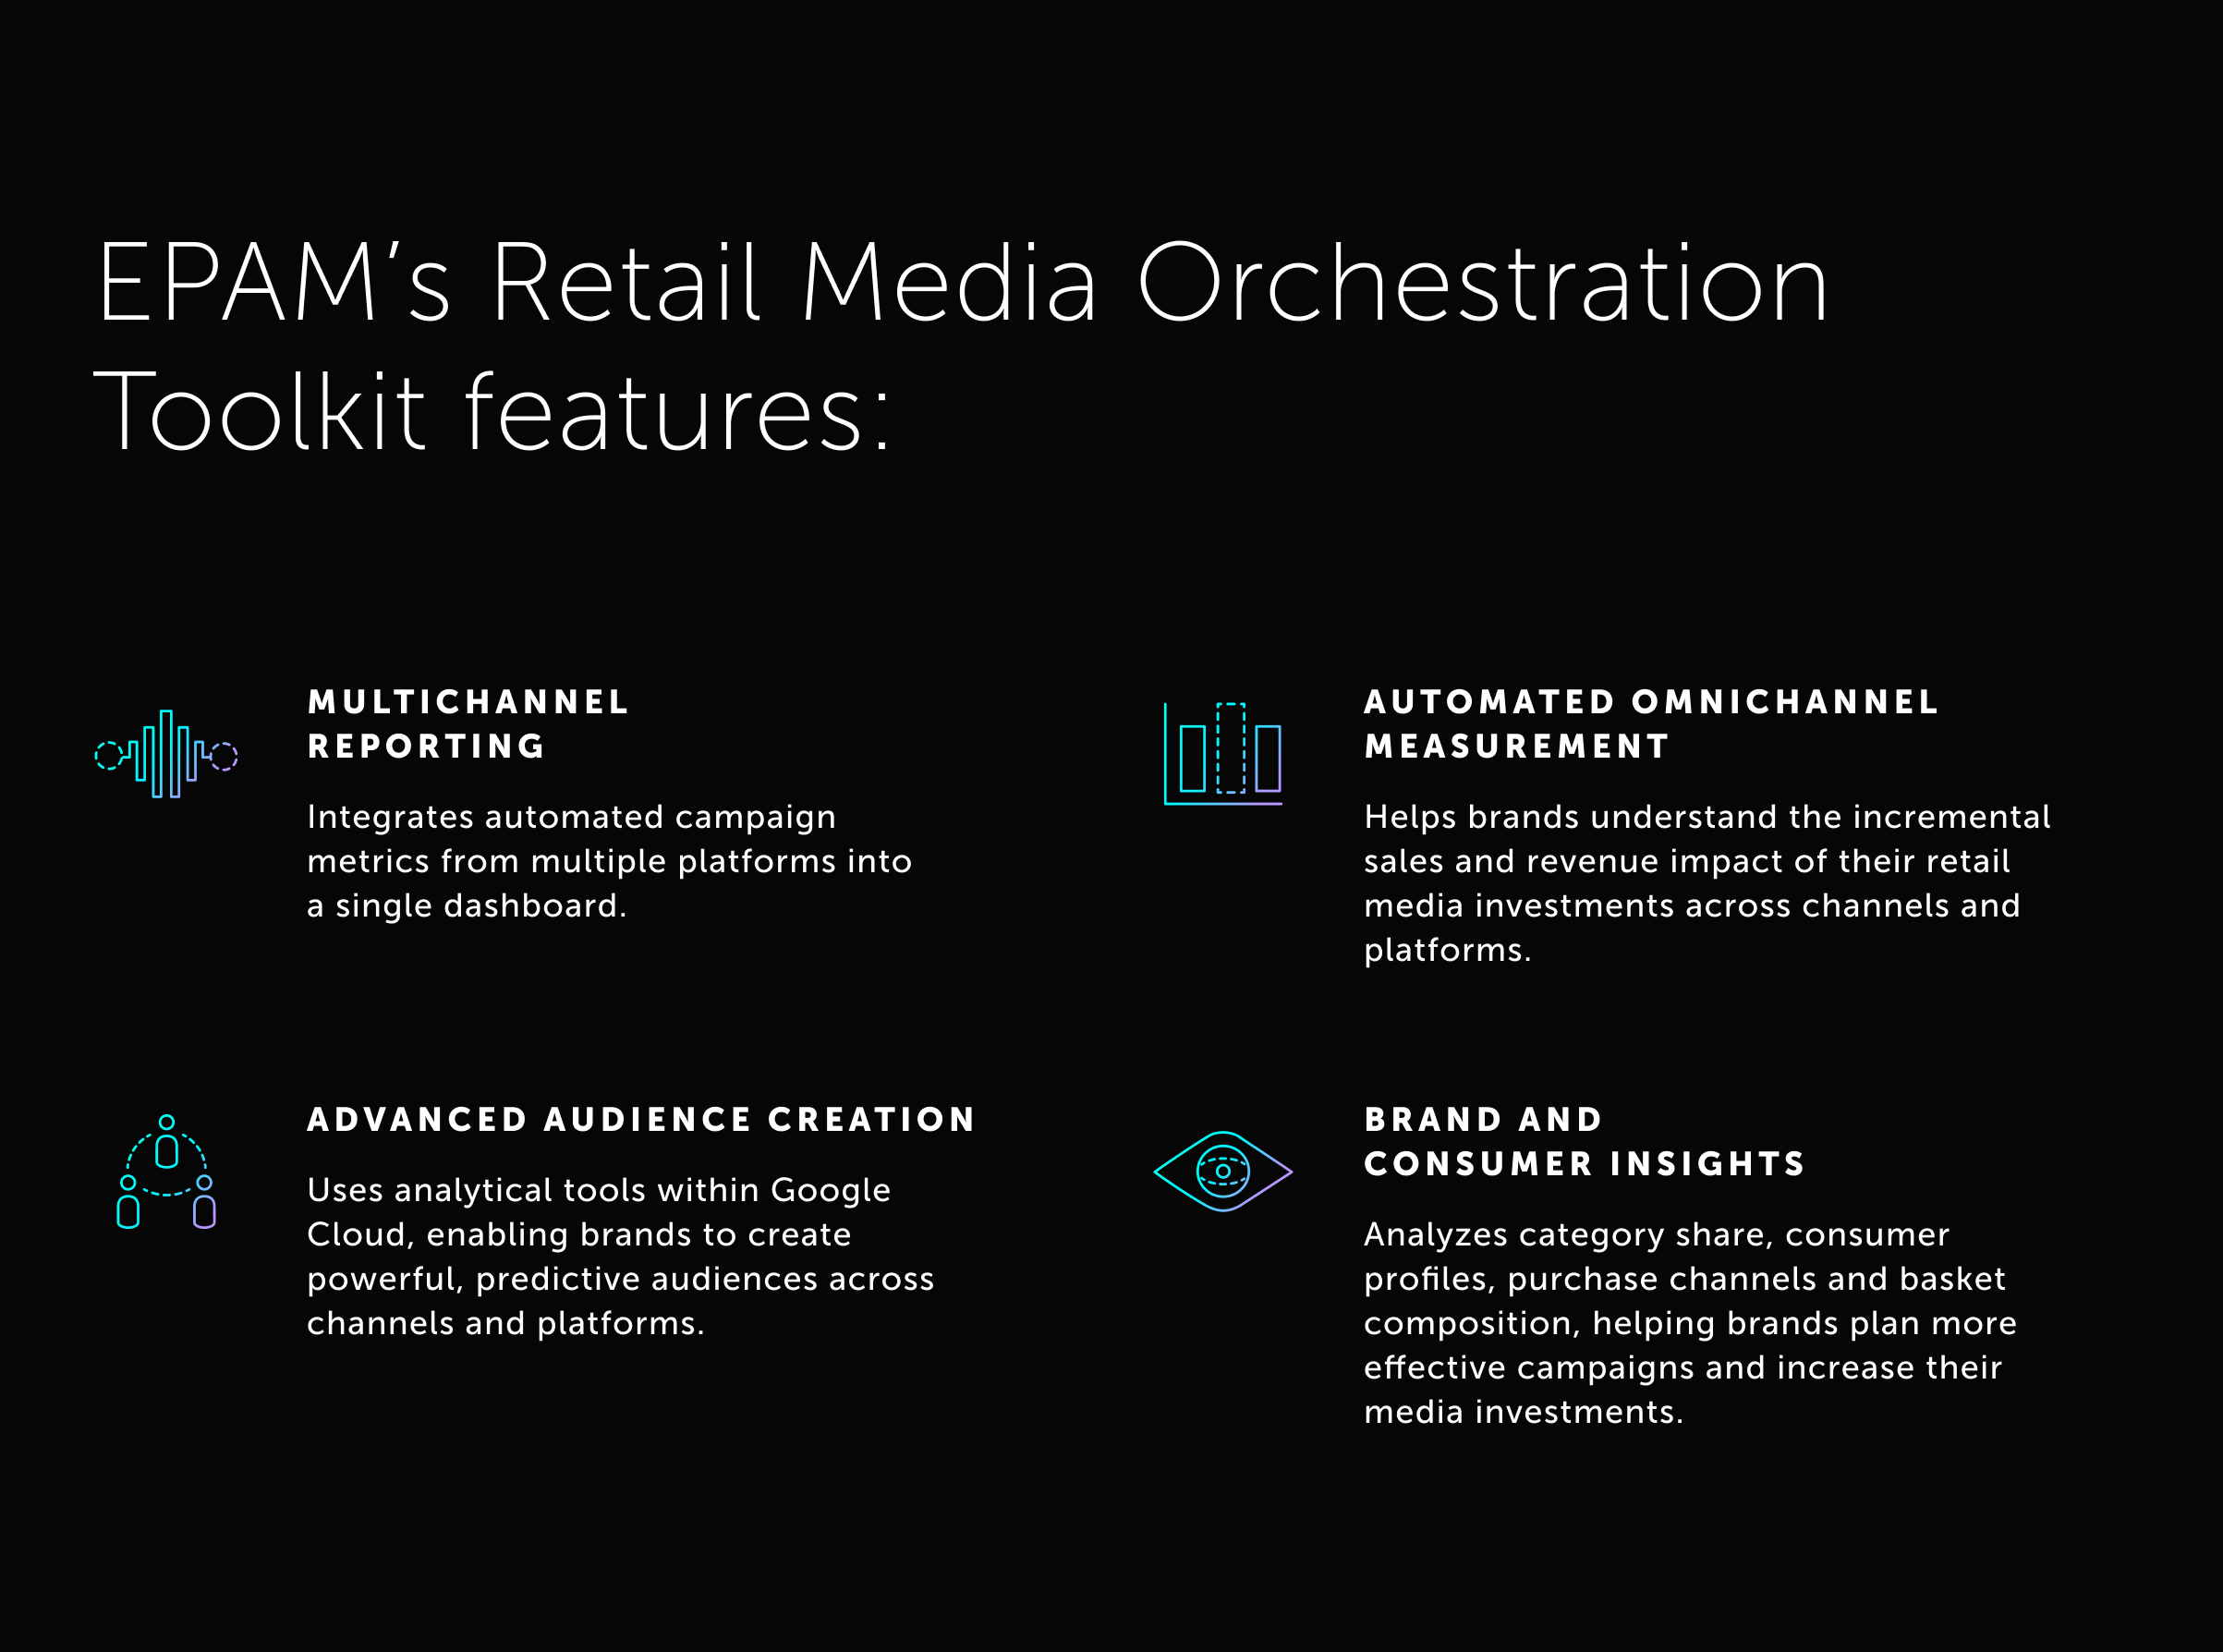 EPAM anunció el Toolkit de Orquestación de Retail Media